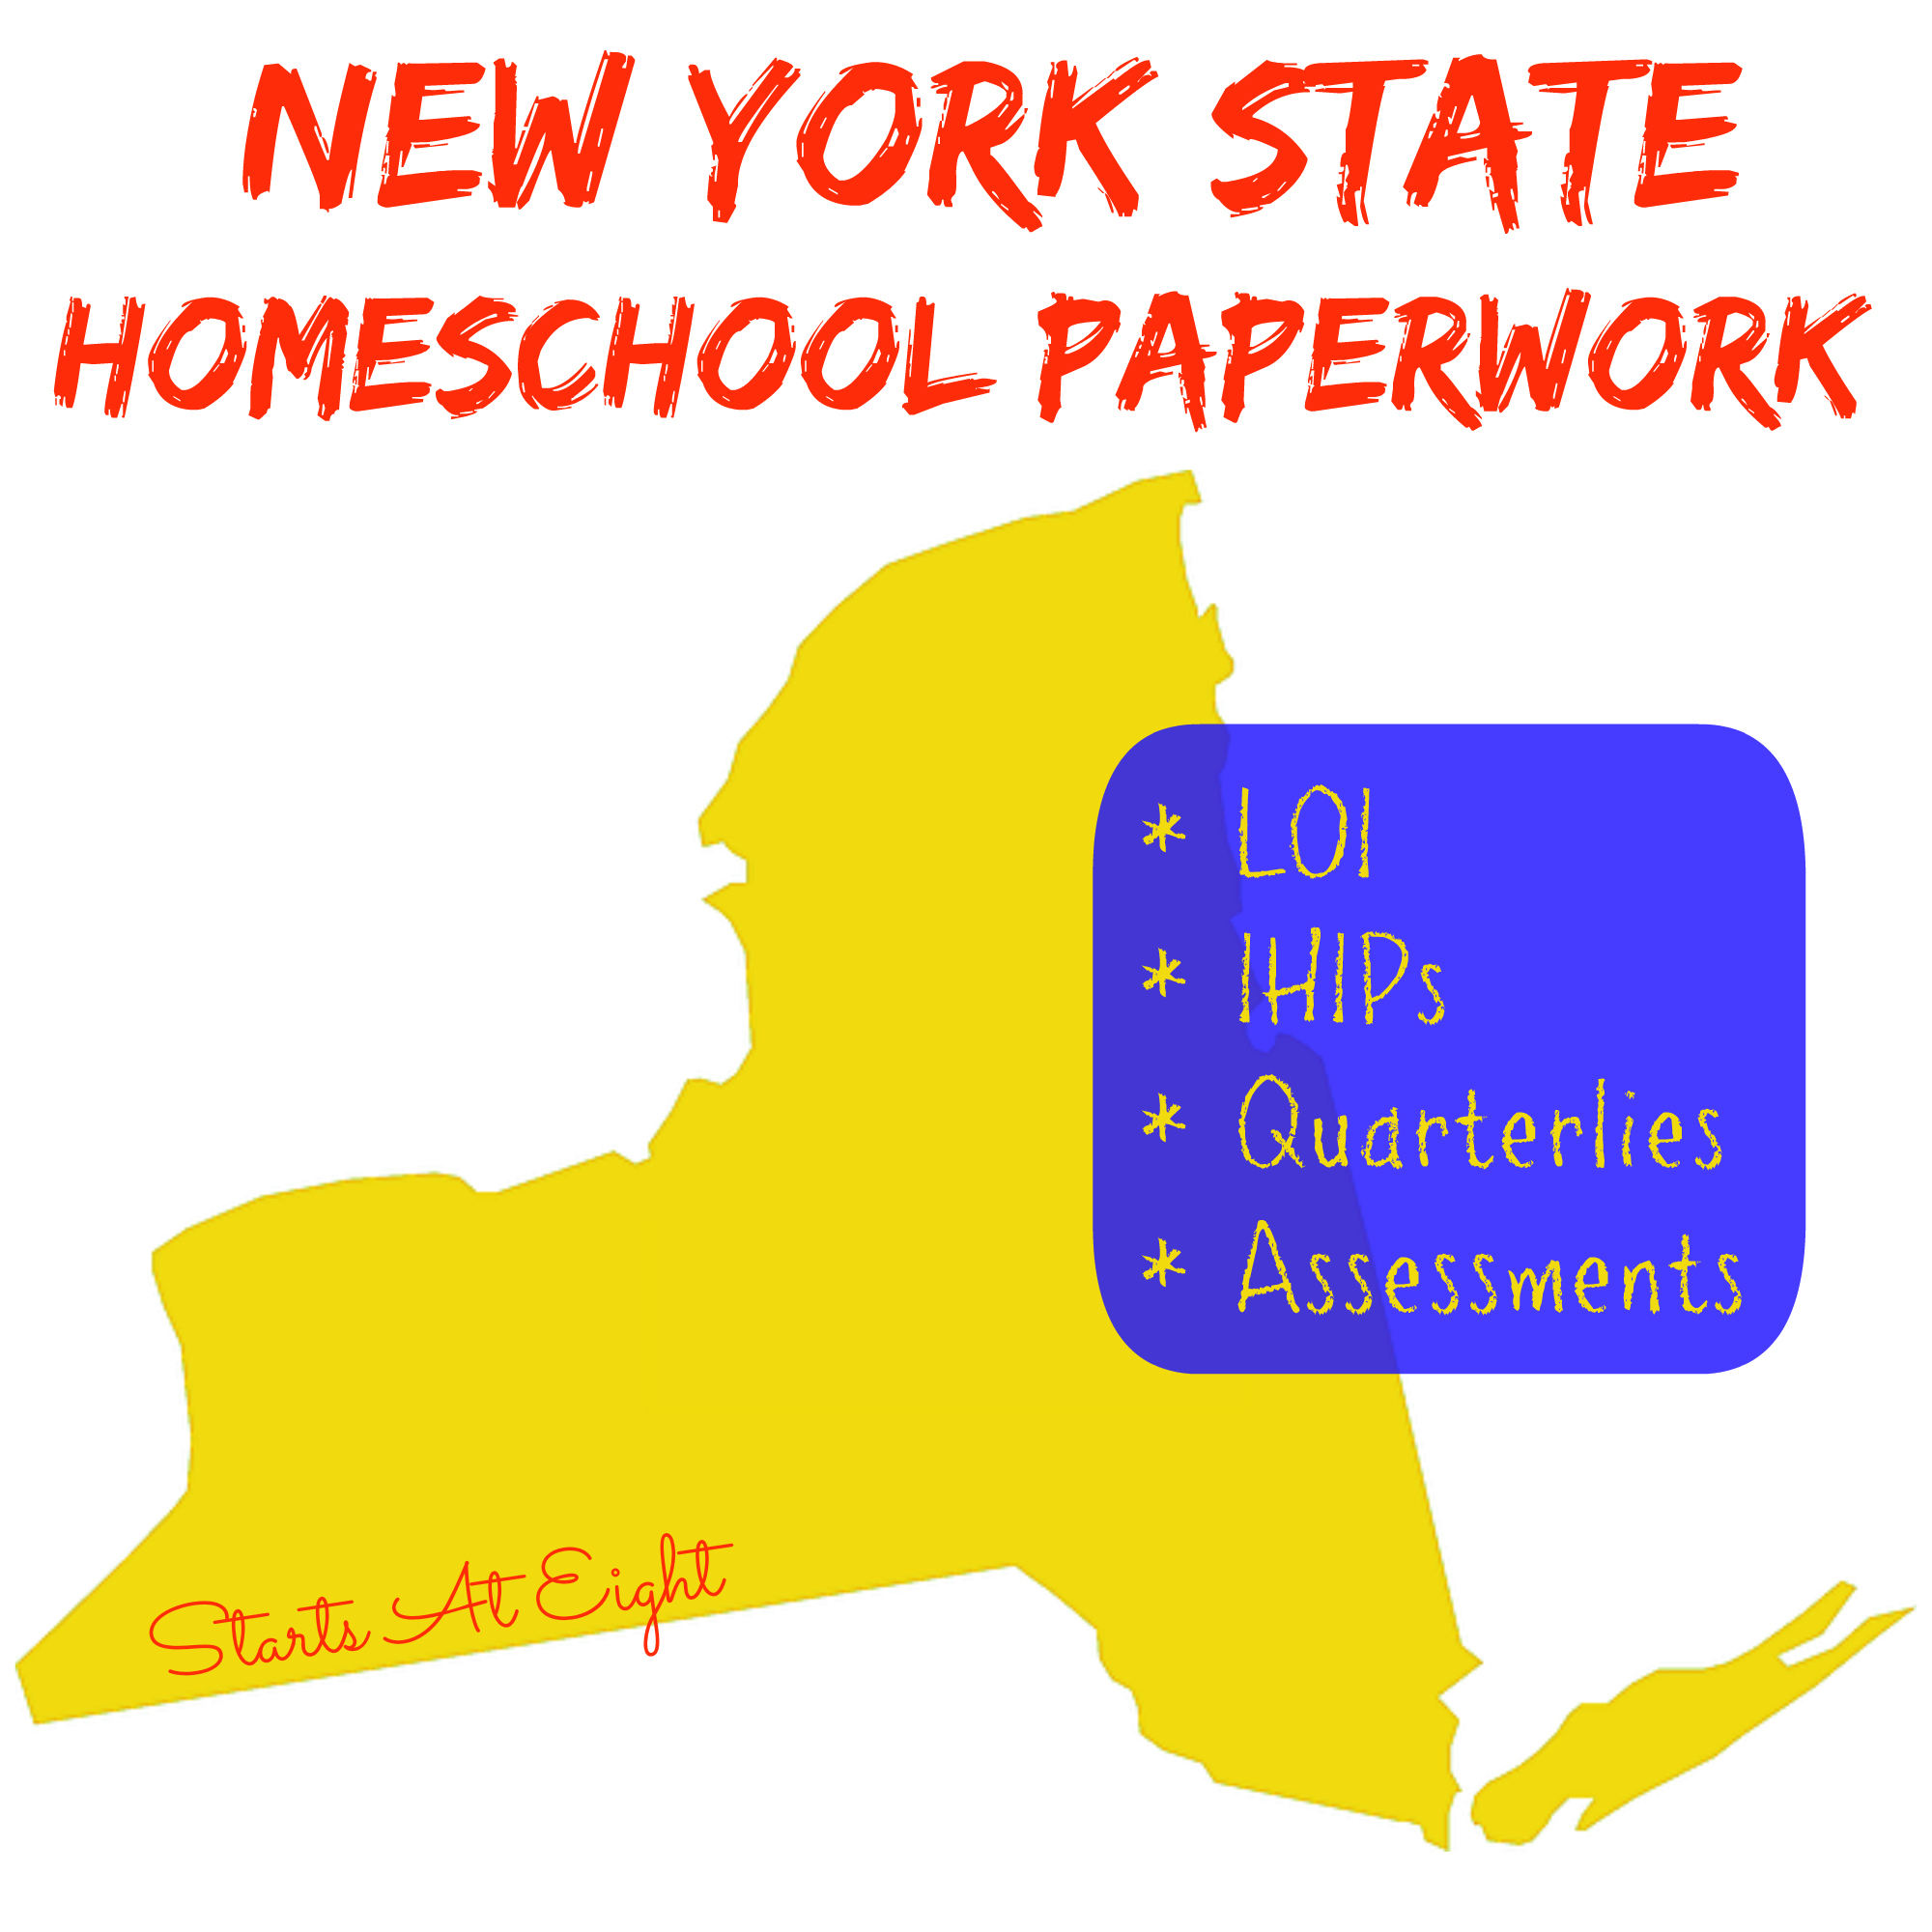 New York State Homeschool Paperwork - StartsAtEight